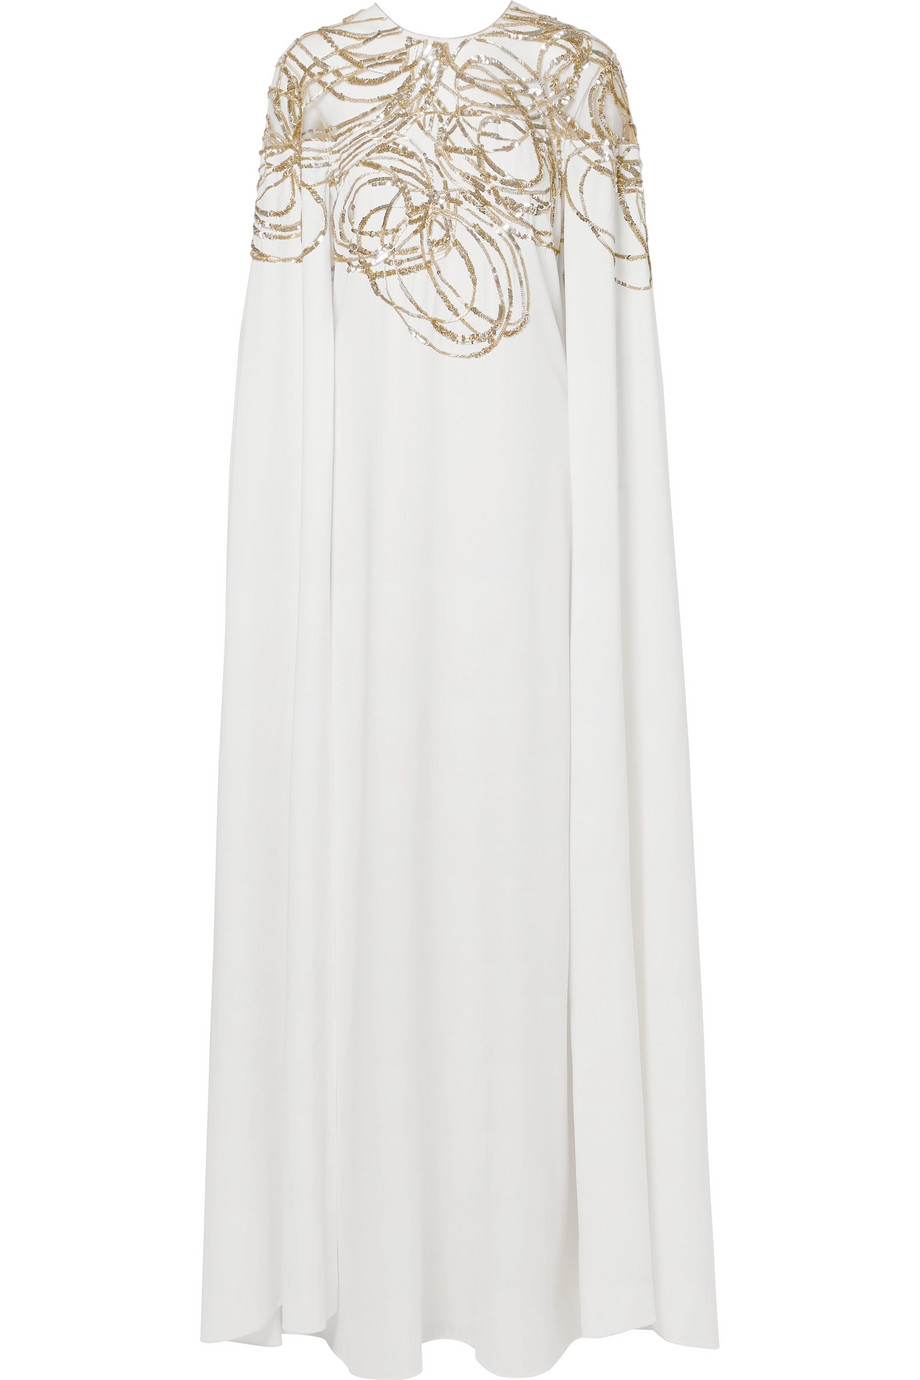 Платье Oscar de la Renta (net-a-porter.com) -&nbsp;223 578 руб.